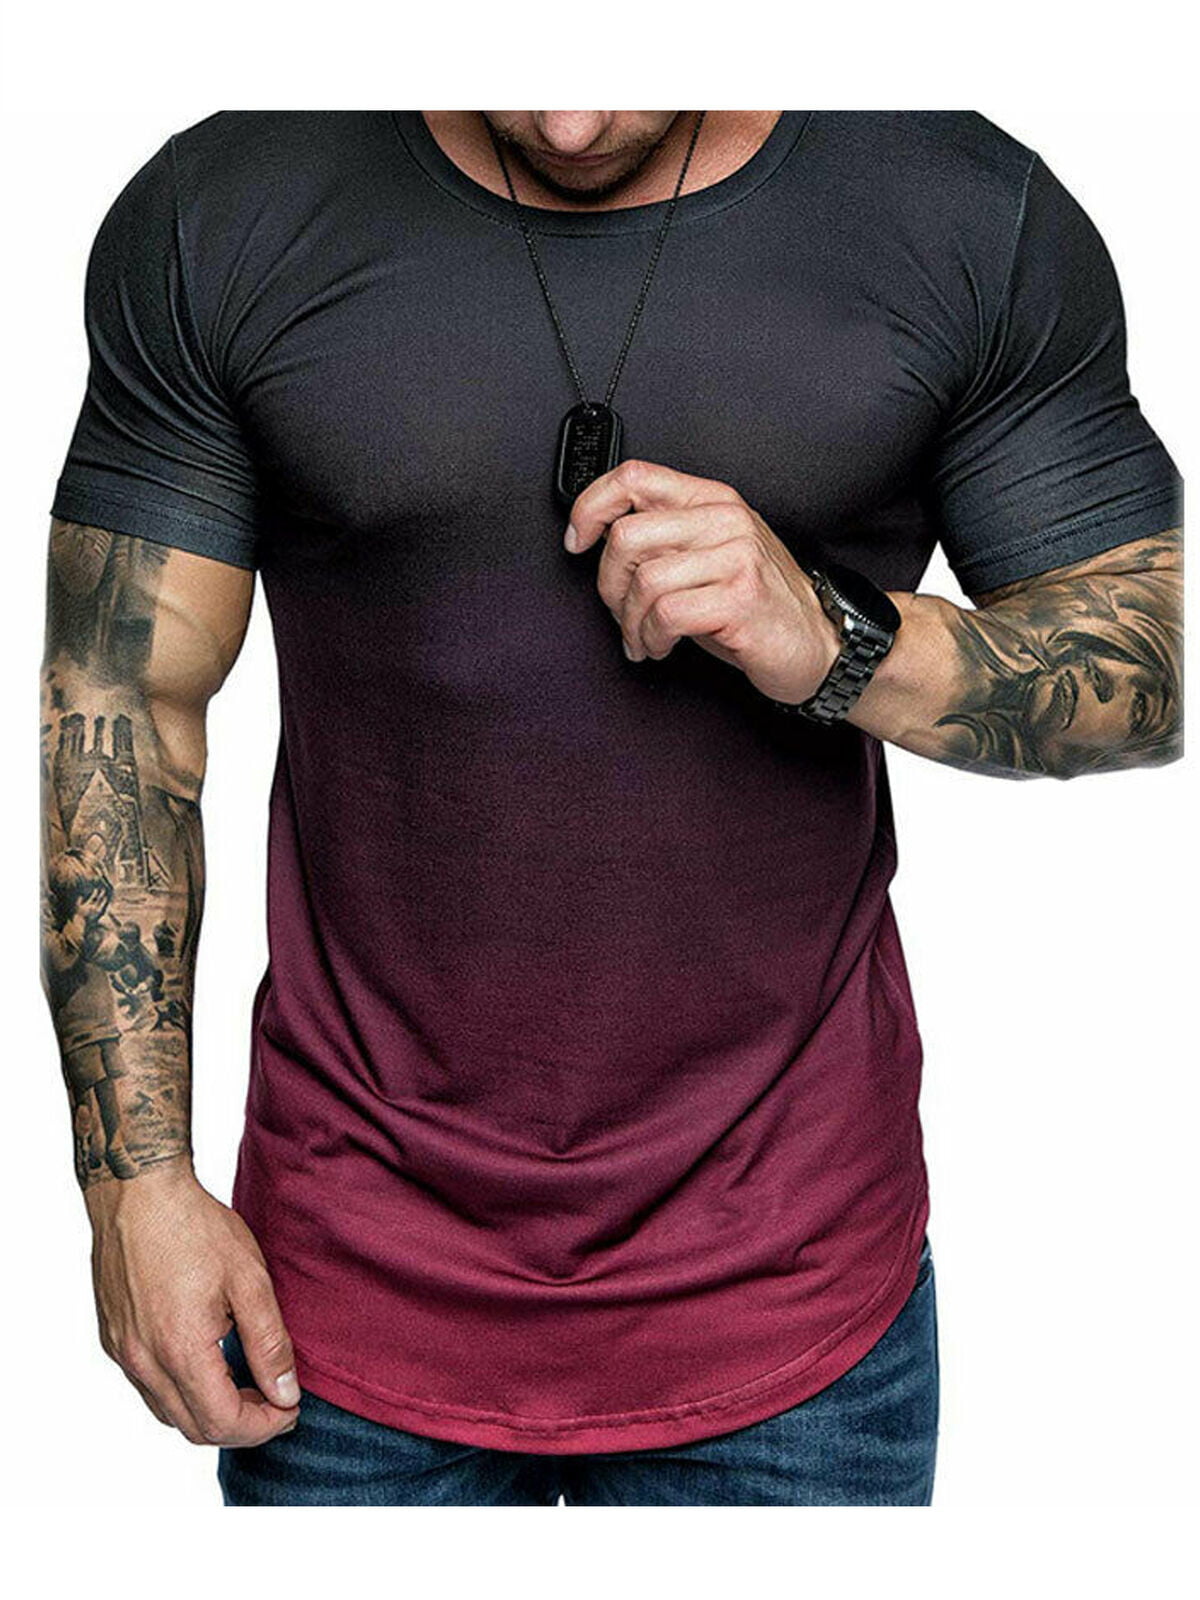 Muscle T Shirt For Girls – Telegraph